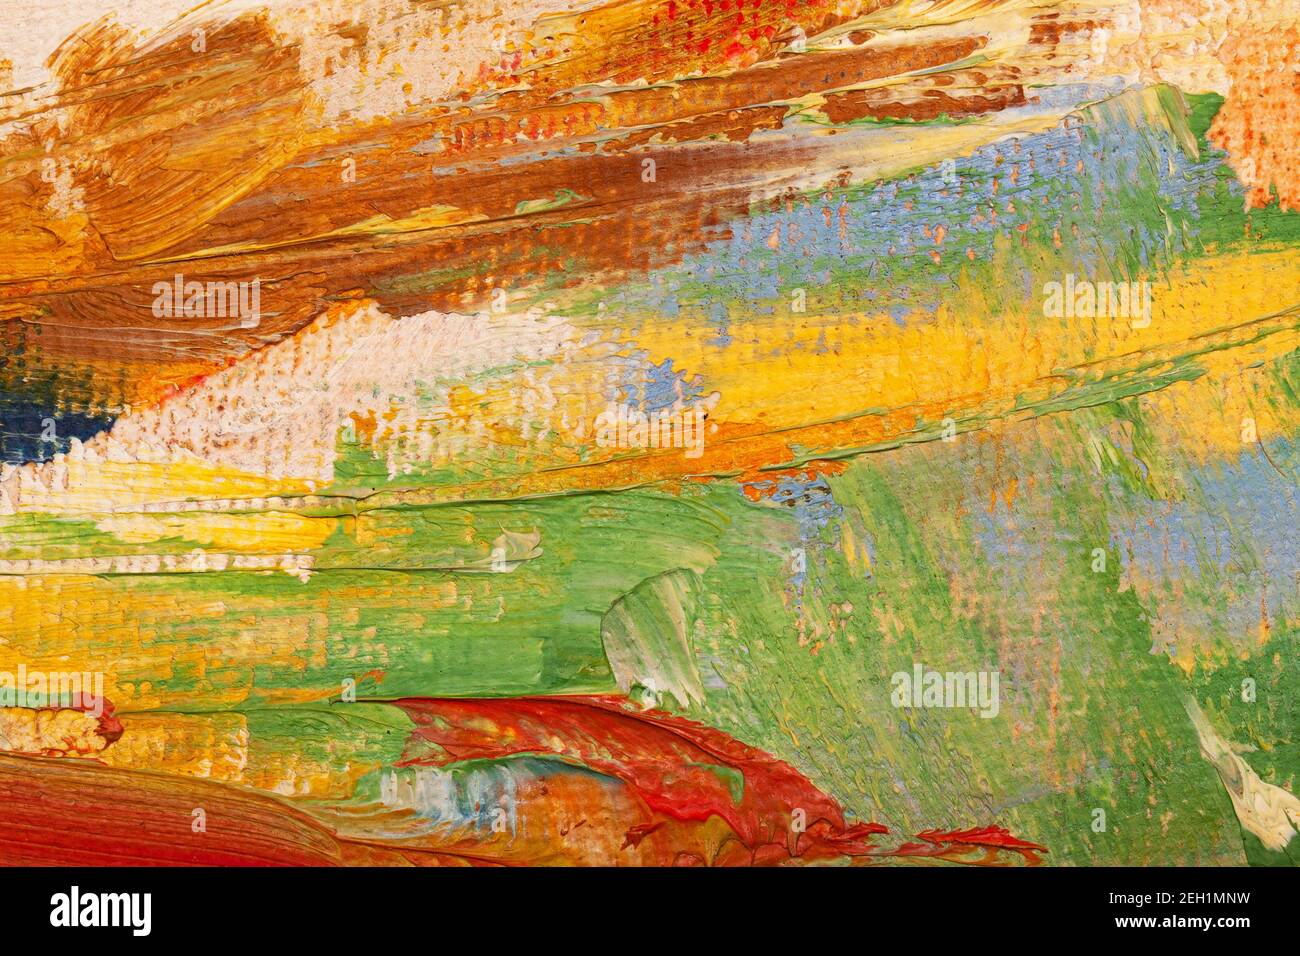 Die Textur der Leinwand, mit Ölfarben beschichtet. Trendige helle Farben, Kopierraum. Das Konzept einer kreativen Atmosphäre, künstlerische Veranstaltungen, Bildung, etc. Stockfoto